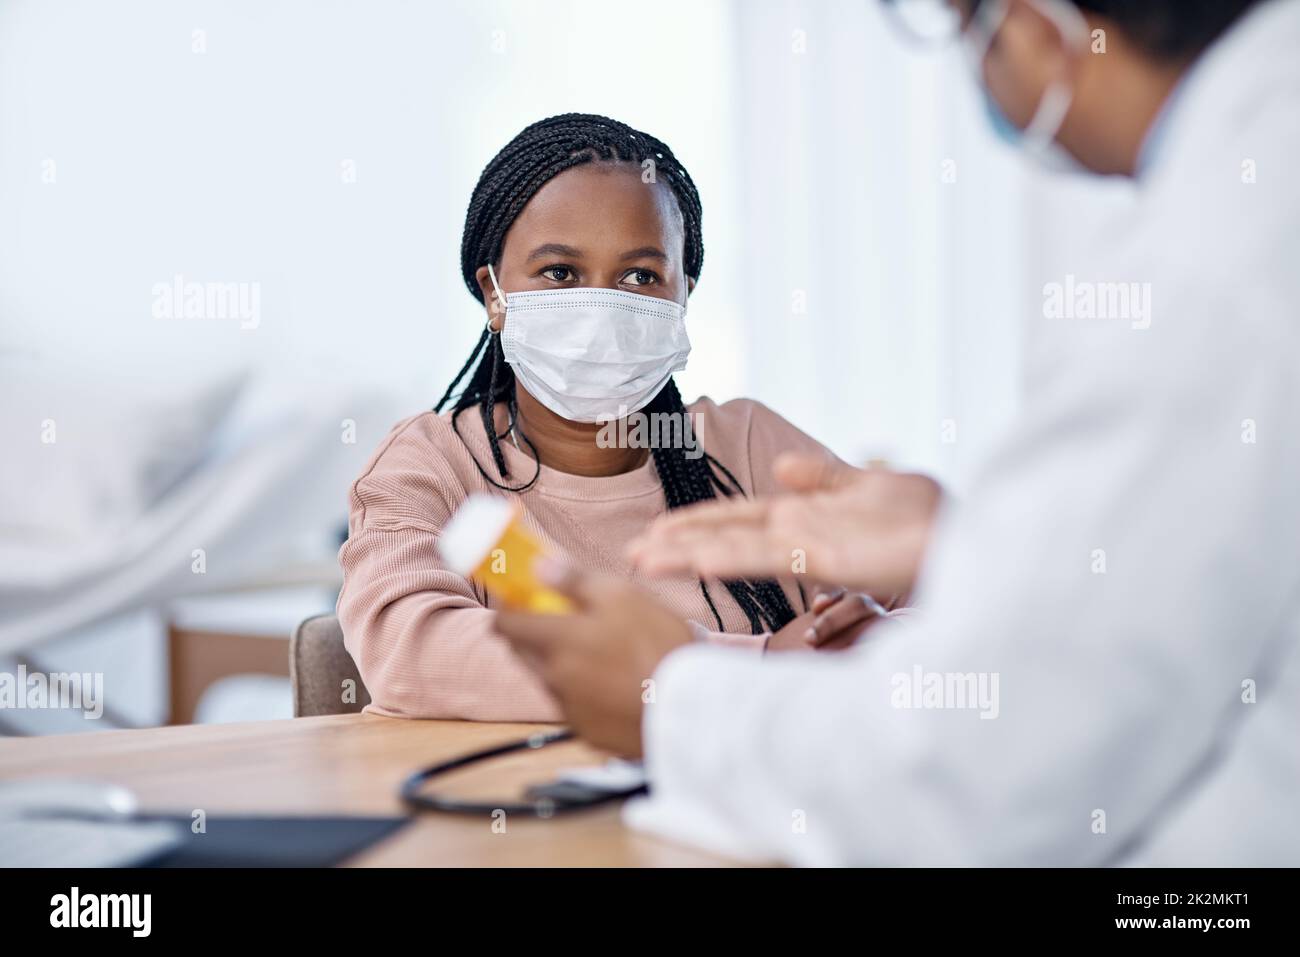 Den Anweisungen des Arztes zuhören. Aufnahme einer jungen Frau, die während einer Konsultation Medikamente von einem Arzt erhält. Stockfoto